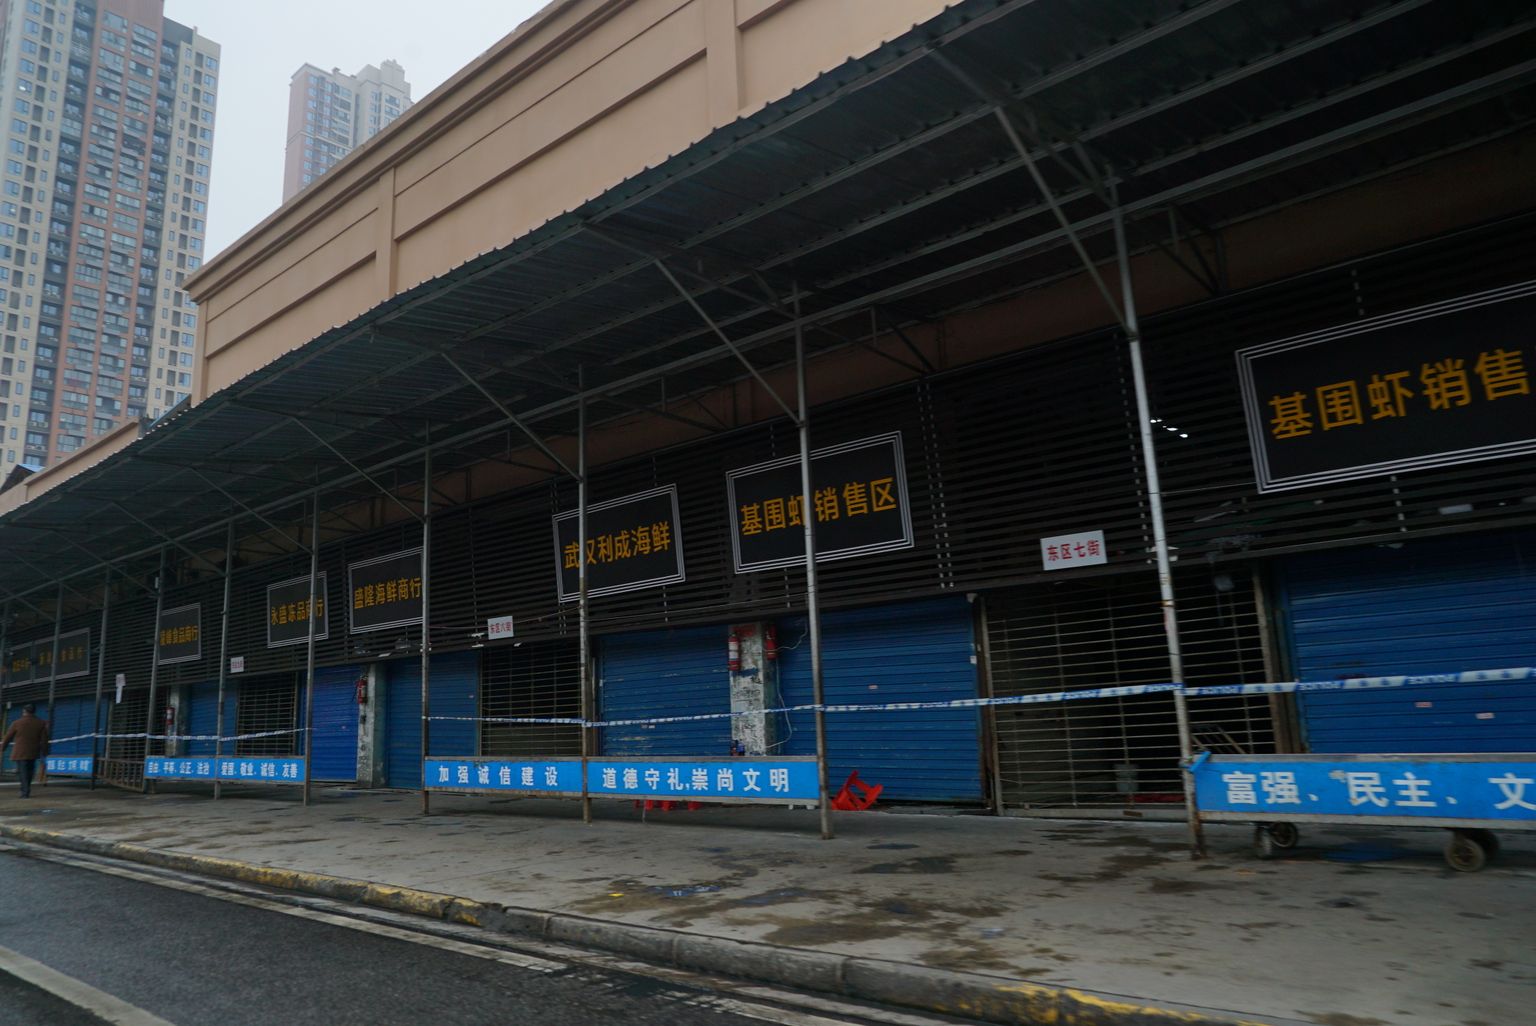 Wuhani turg, kust koroonaviiruse puhang tõenäoliselt alguse sai.